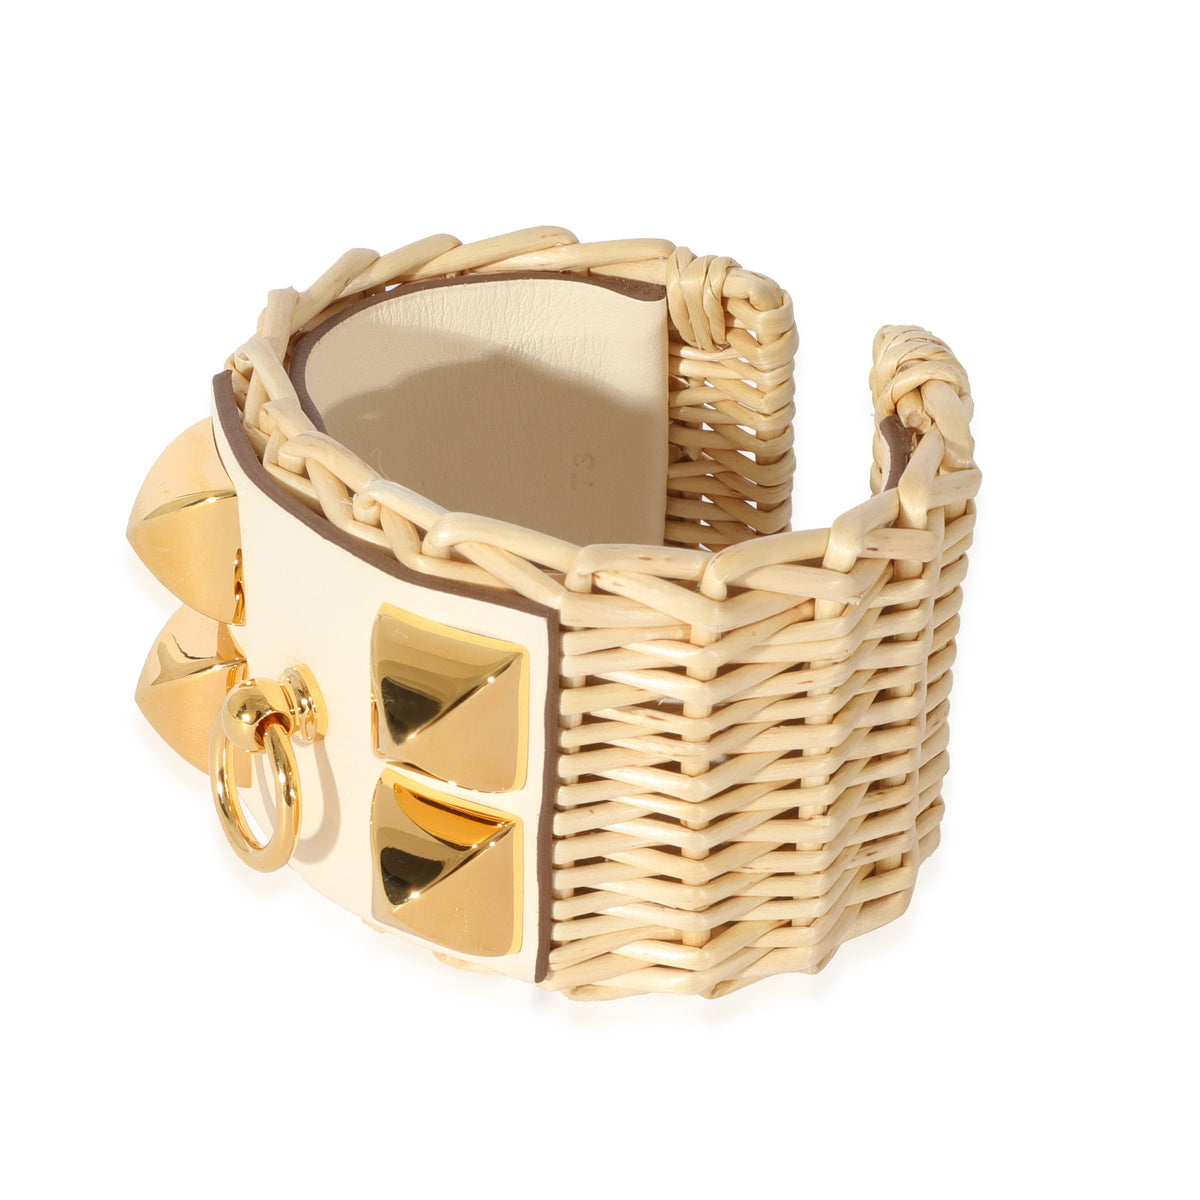 Hermes Medor Picnic Cuff Bracelet In Barenia Calfskin Gold Plated